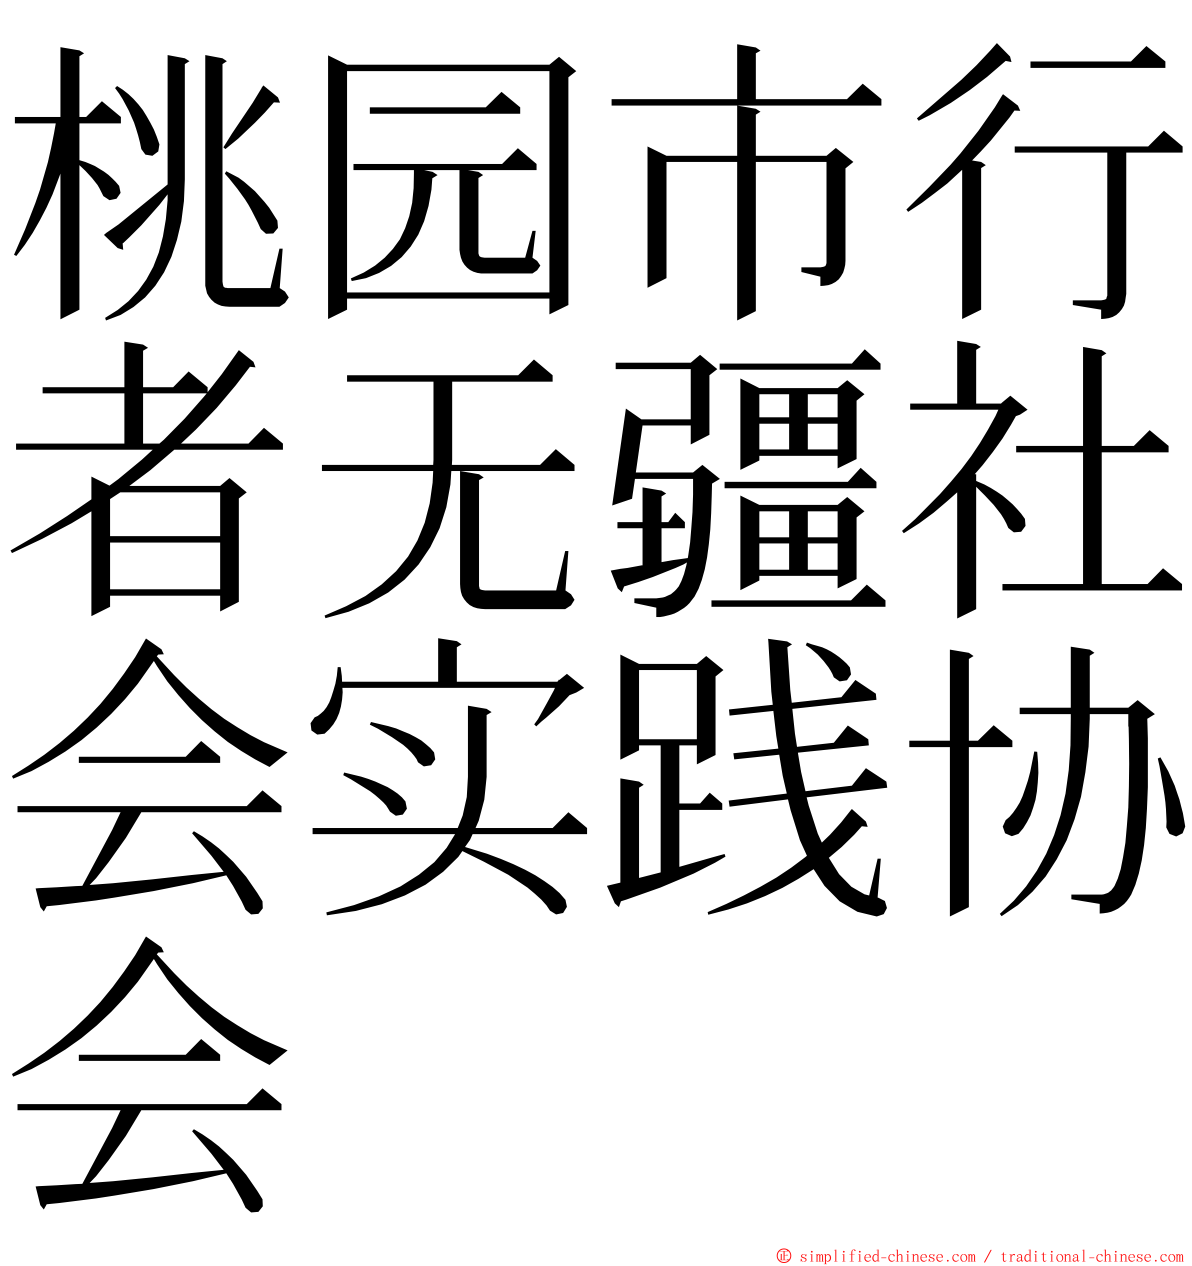 桃园市行者无疆社会实践协会 ming font